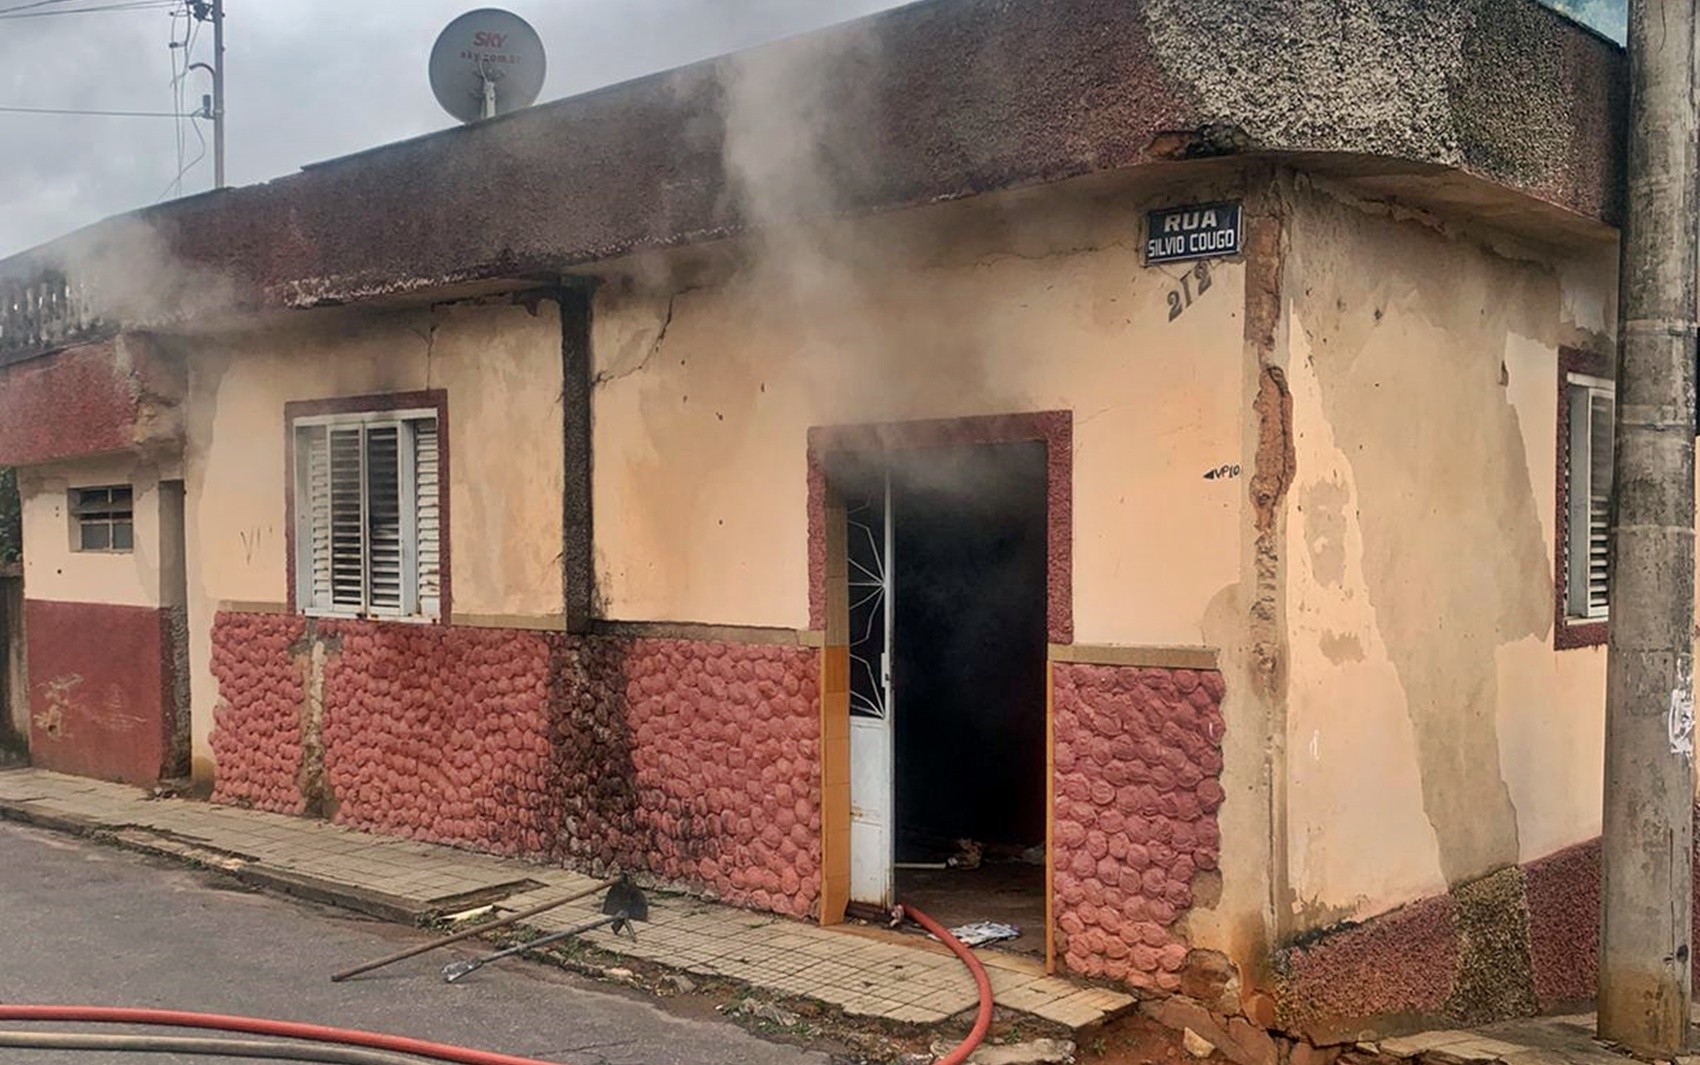 Casa abandonada é destruída por incêndio no bairro Vila Paiva, em Varginha, MG